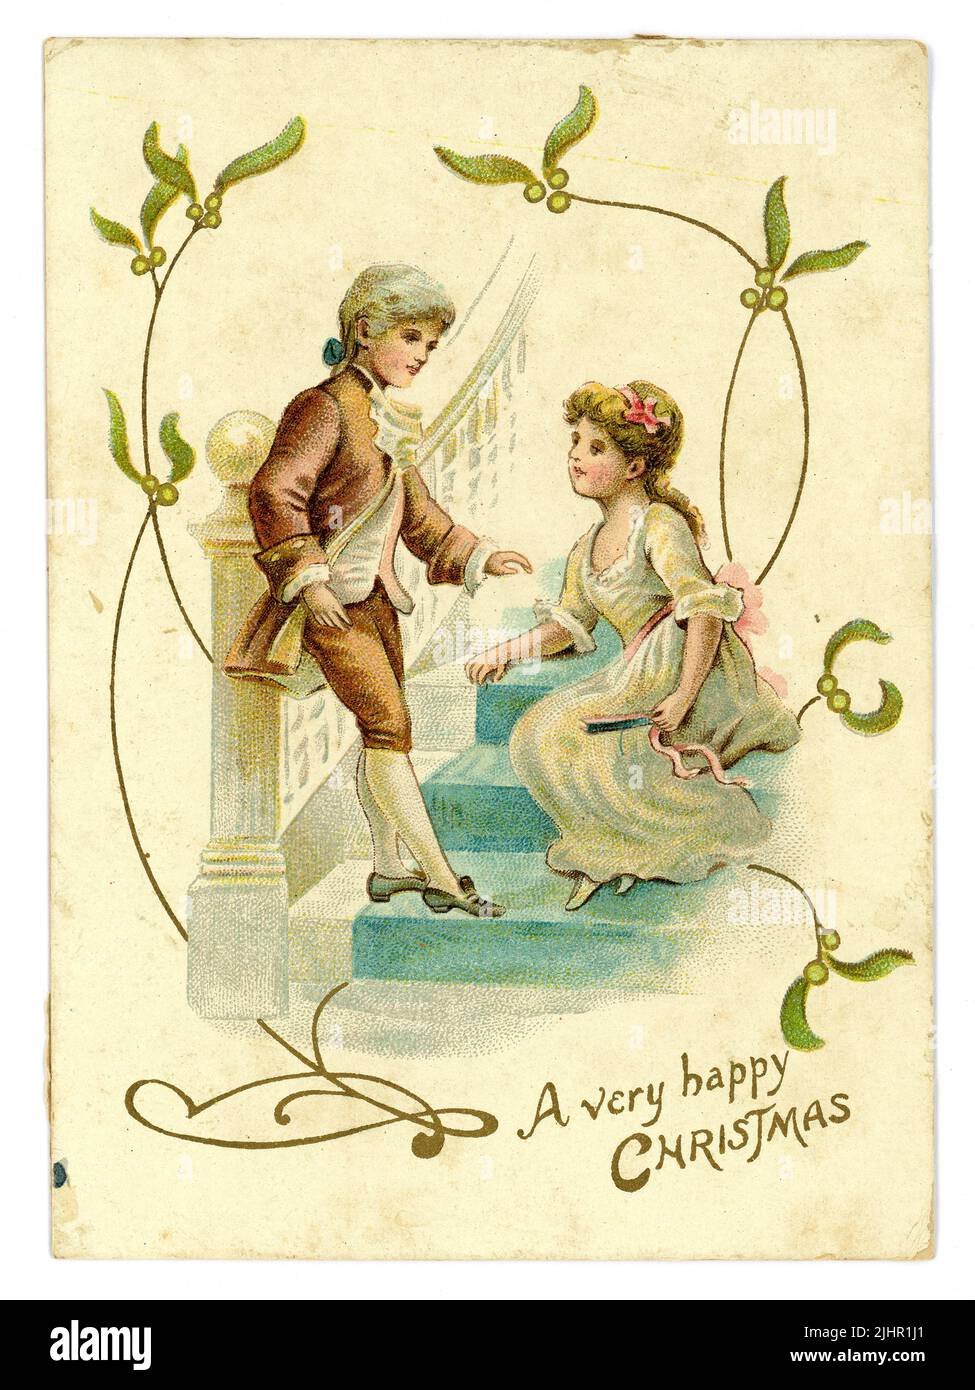 Originale Edwardian era Christmas Greetings card, mistletoe, bambini in stile Regency periodo (Regency era 1811-1820) vestiti coppia bambino corteggiamento, circa 1905 Regno Unito Foto Stock